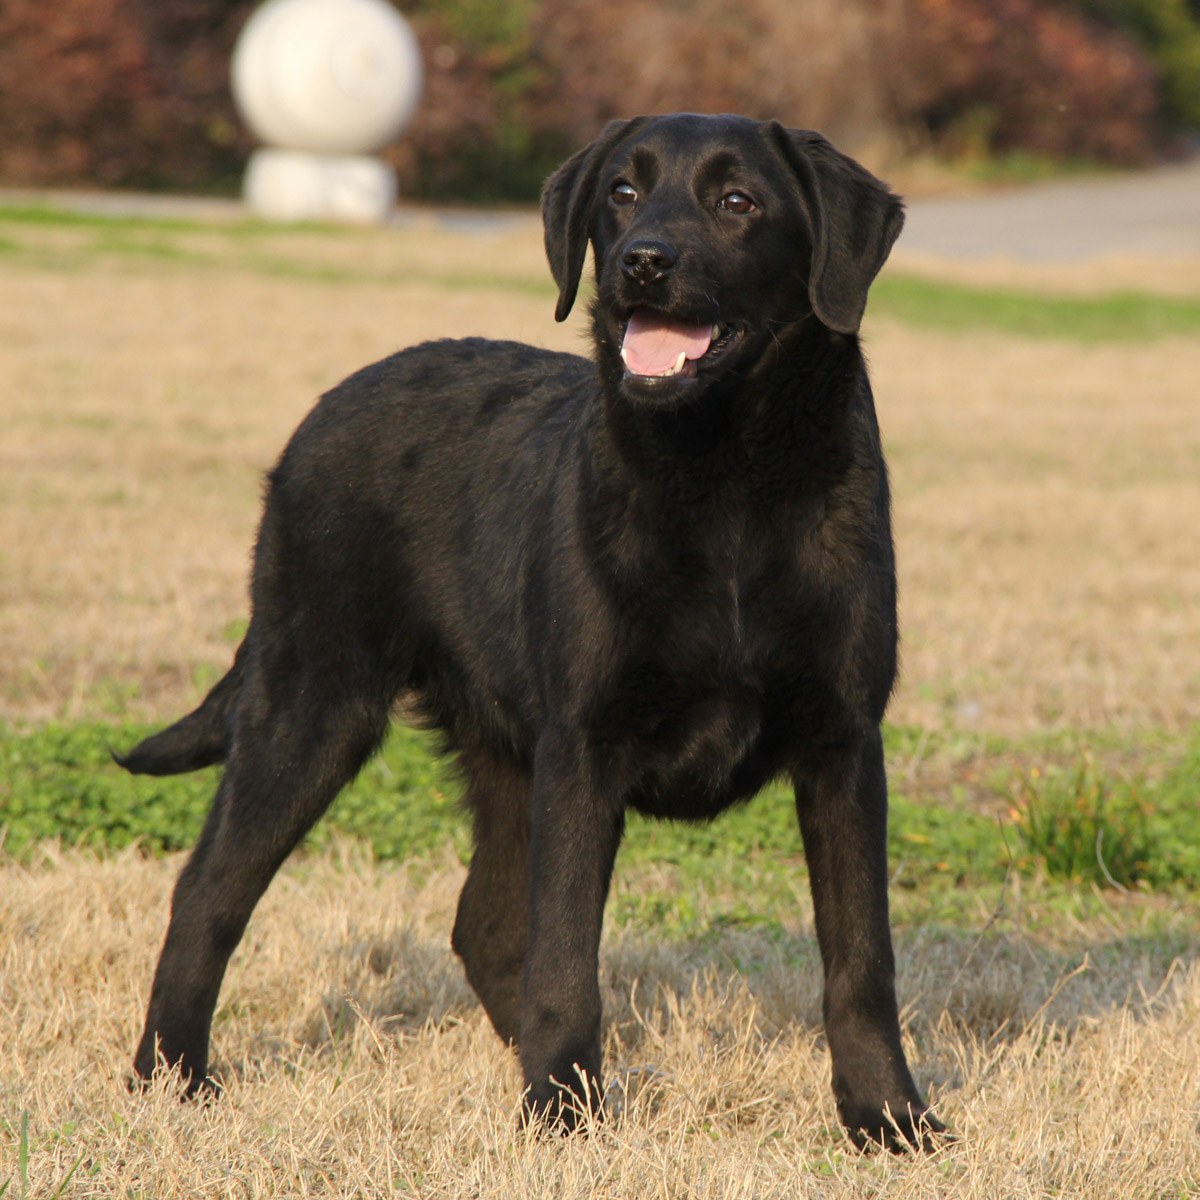 小狗 黑色拉布拉多犬 拉布拉多犬 - Pixabay上的免费照片 - Pixabay